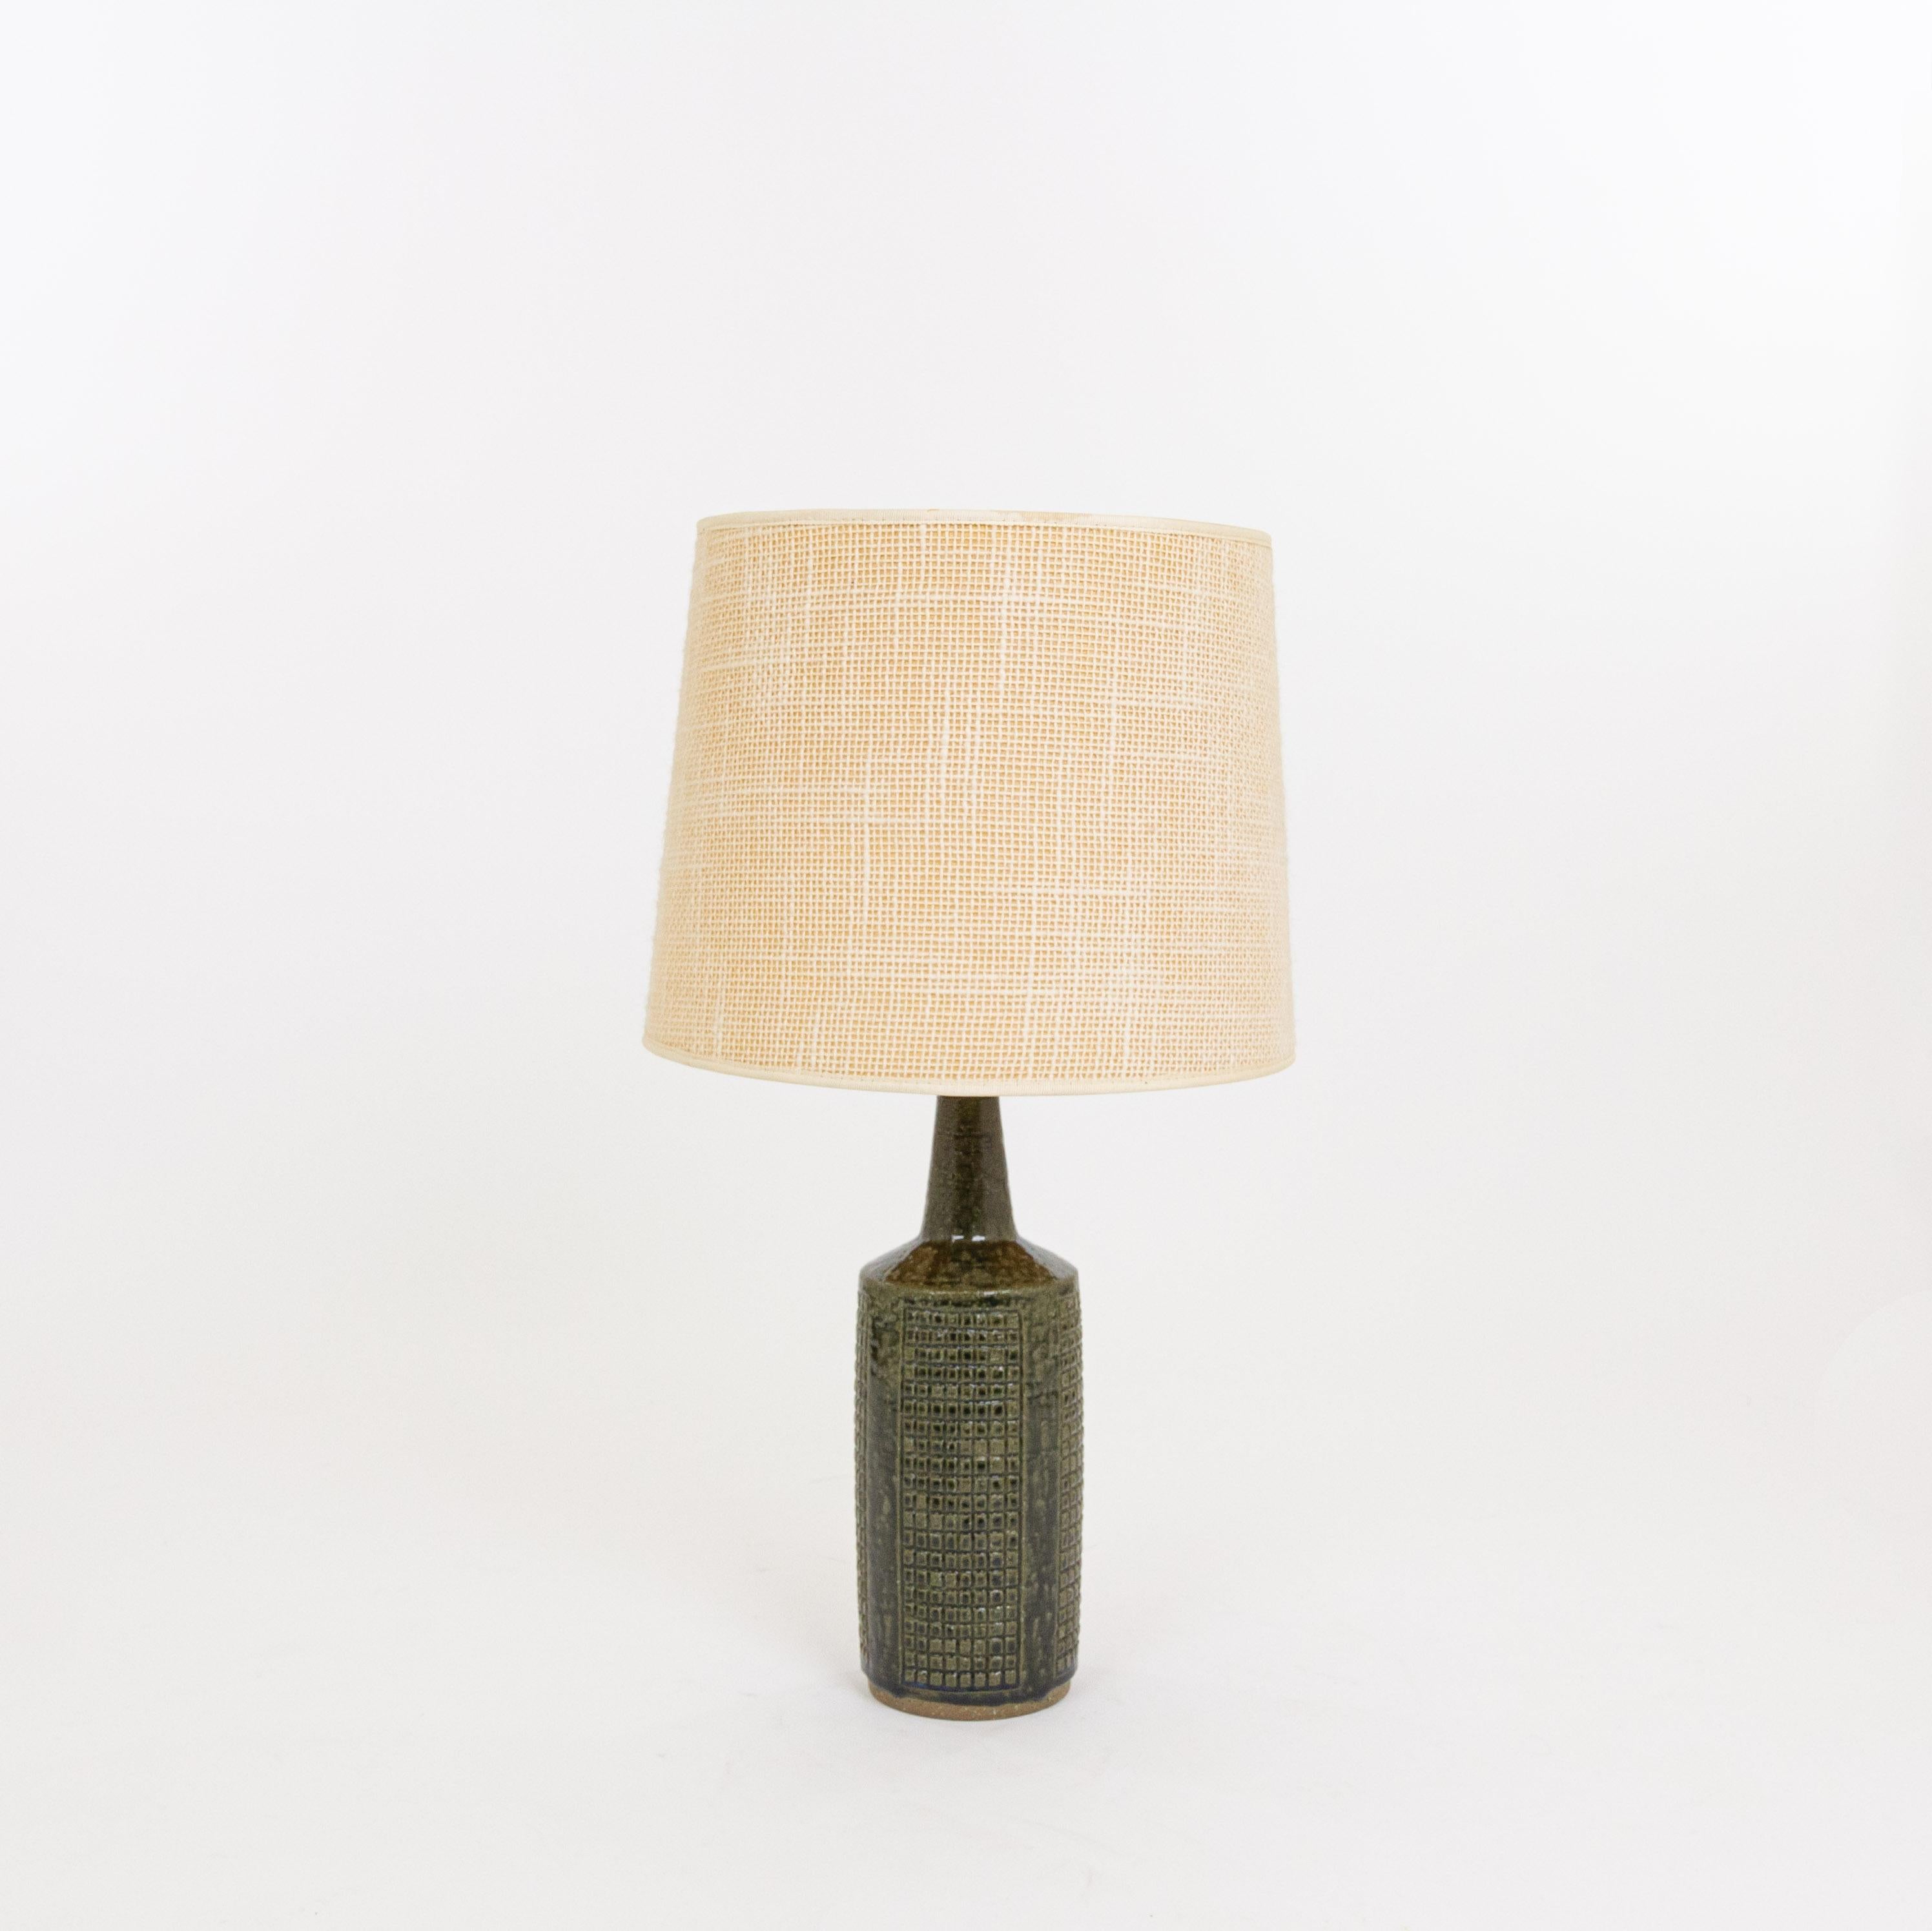 Lampe de table modèle DL/30 réalisée par Annelise et Per Linnemann-Schmidt pour Palshus dans les années 1960. La couleur de la base décorée à la main est vert armée. Il présente des motifs géométriques impressionnés.

La lampe est livrée avec son